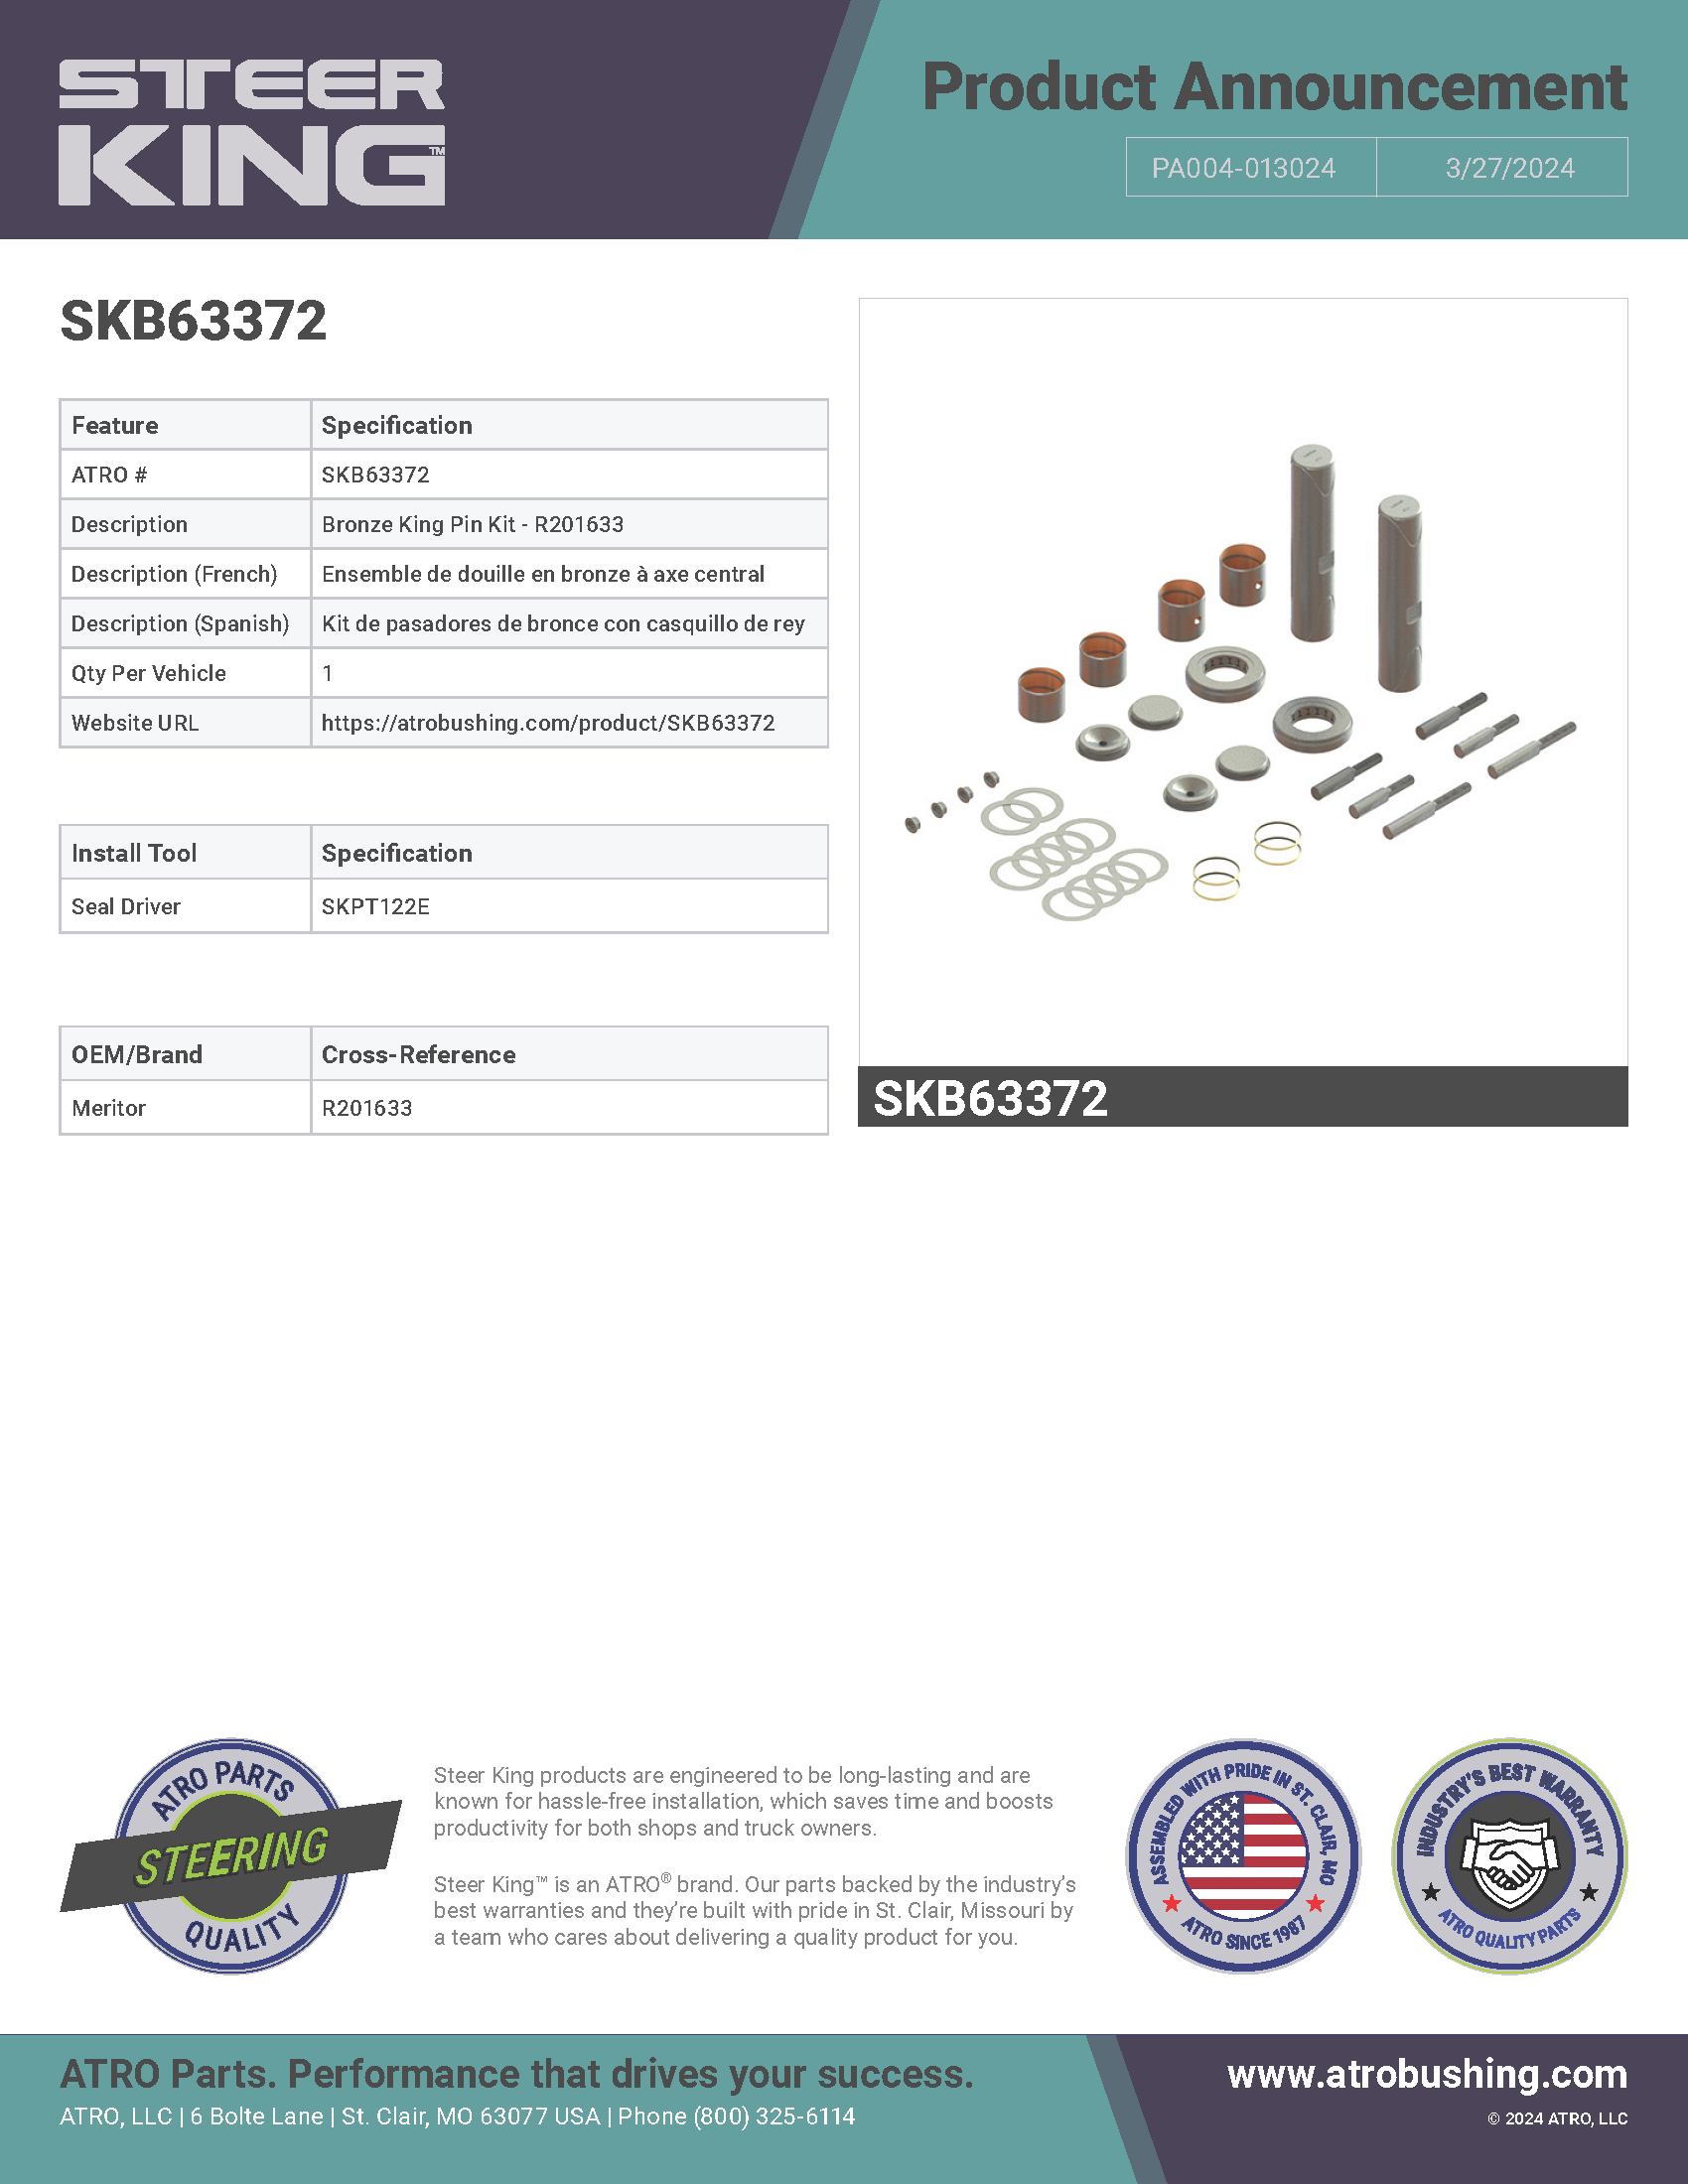 SKB63372 Bronze King Pin Kit - R201633 PA004-013024